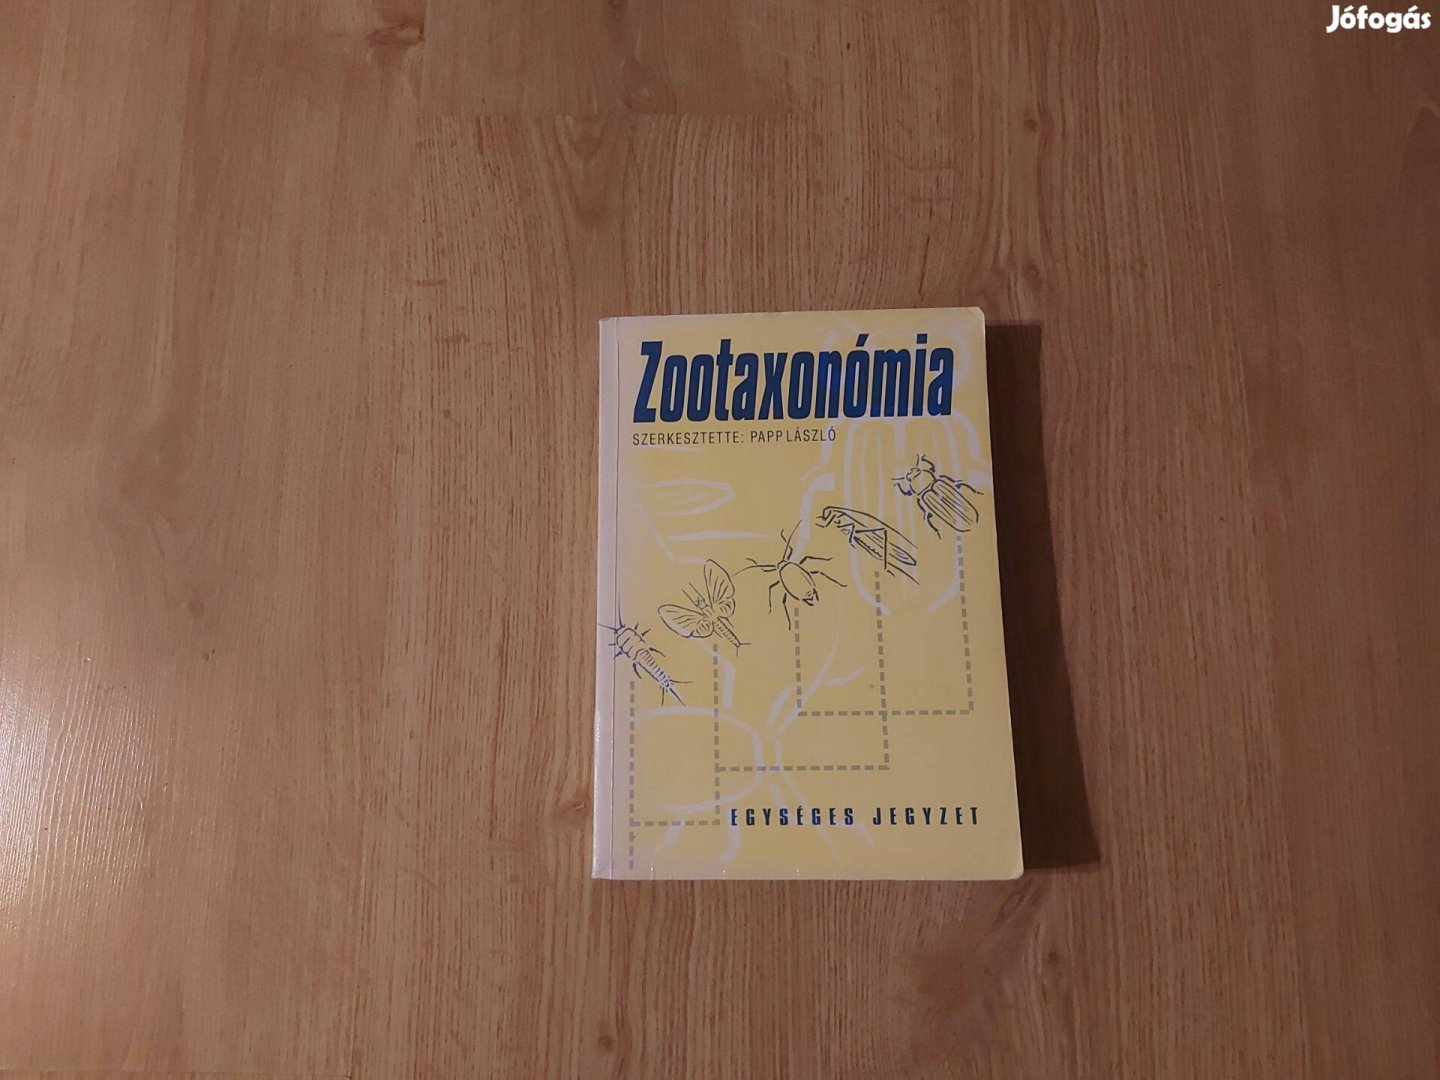 Papp László (szerk.): Zootaxonómia (egységes jegyzet)